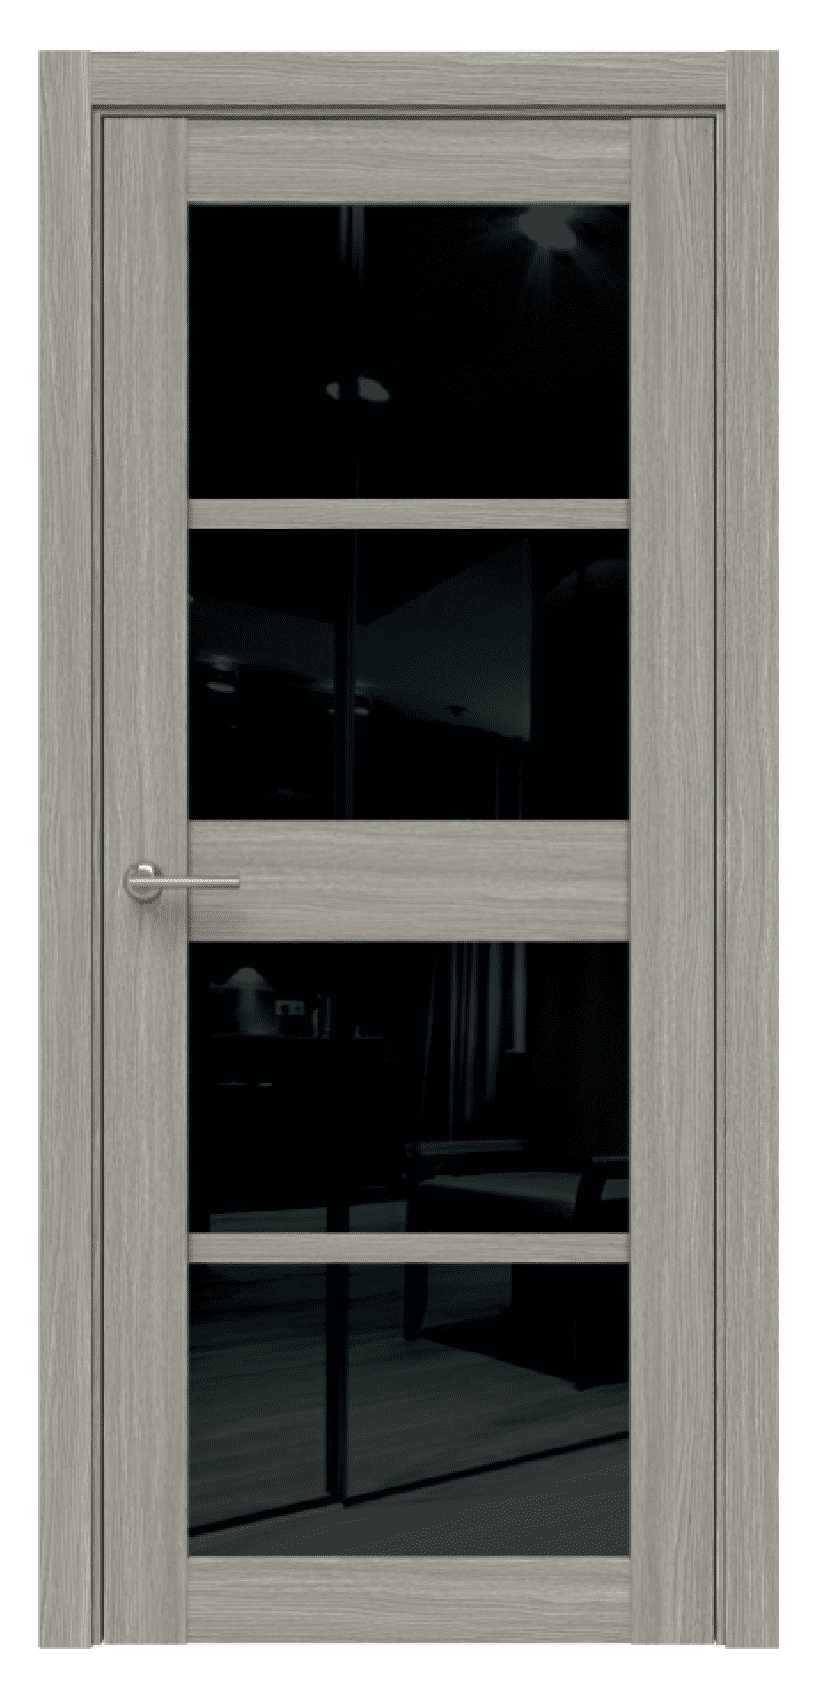 Questdoors Межкомнатная дверь Q24, арт. 17469 - фото №1